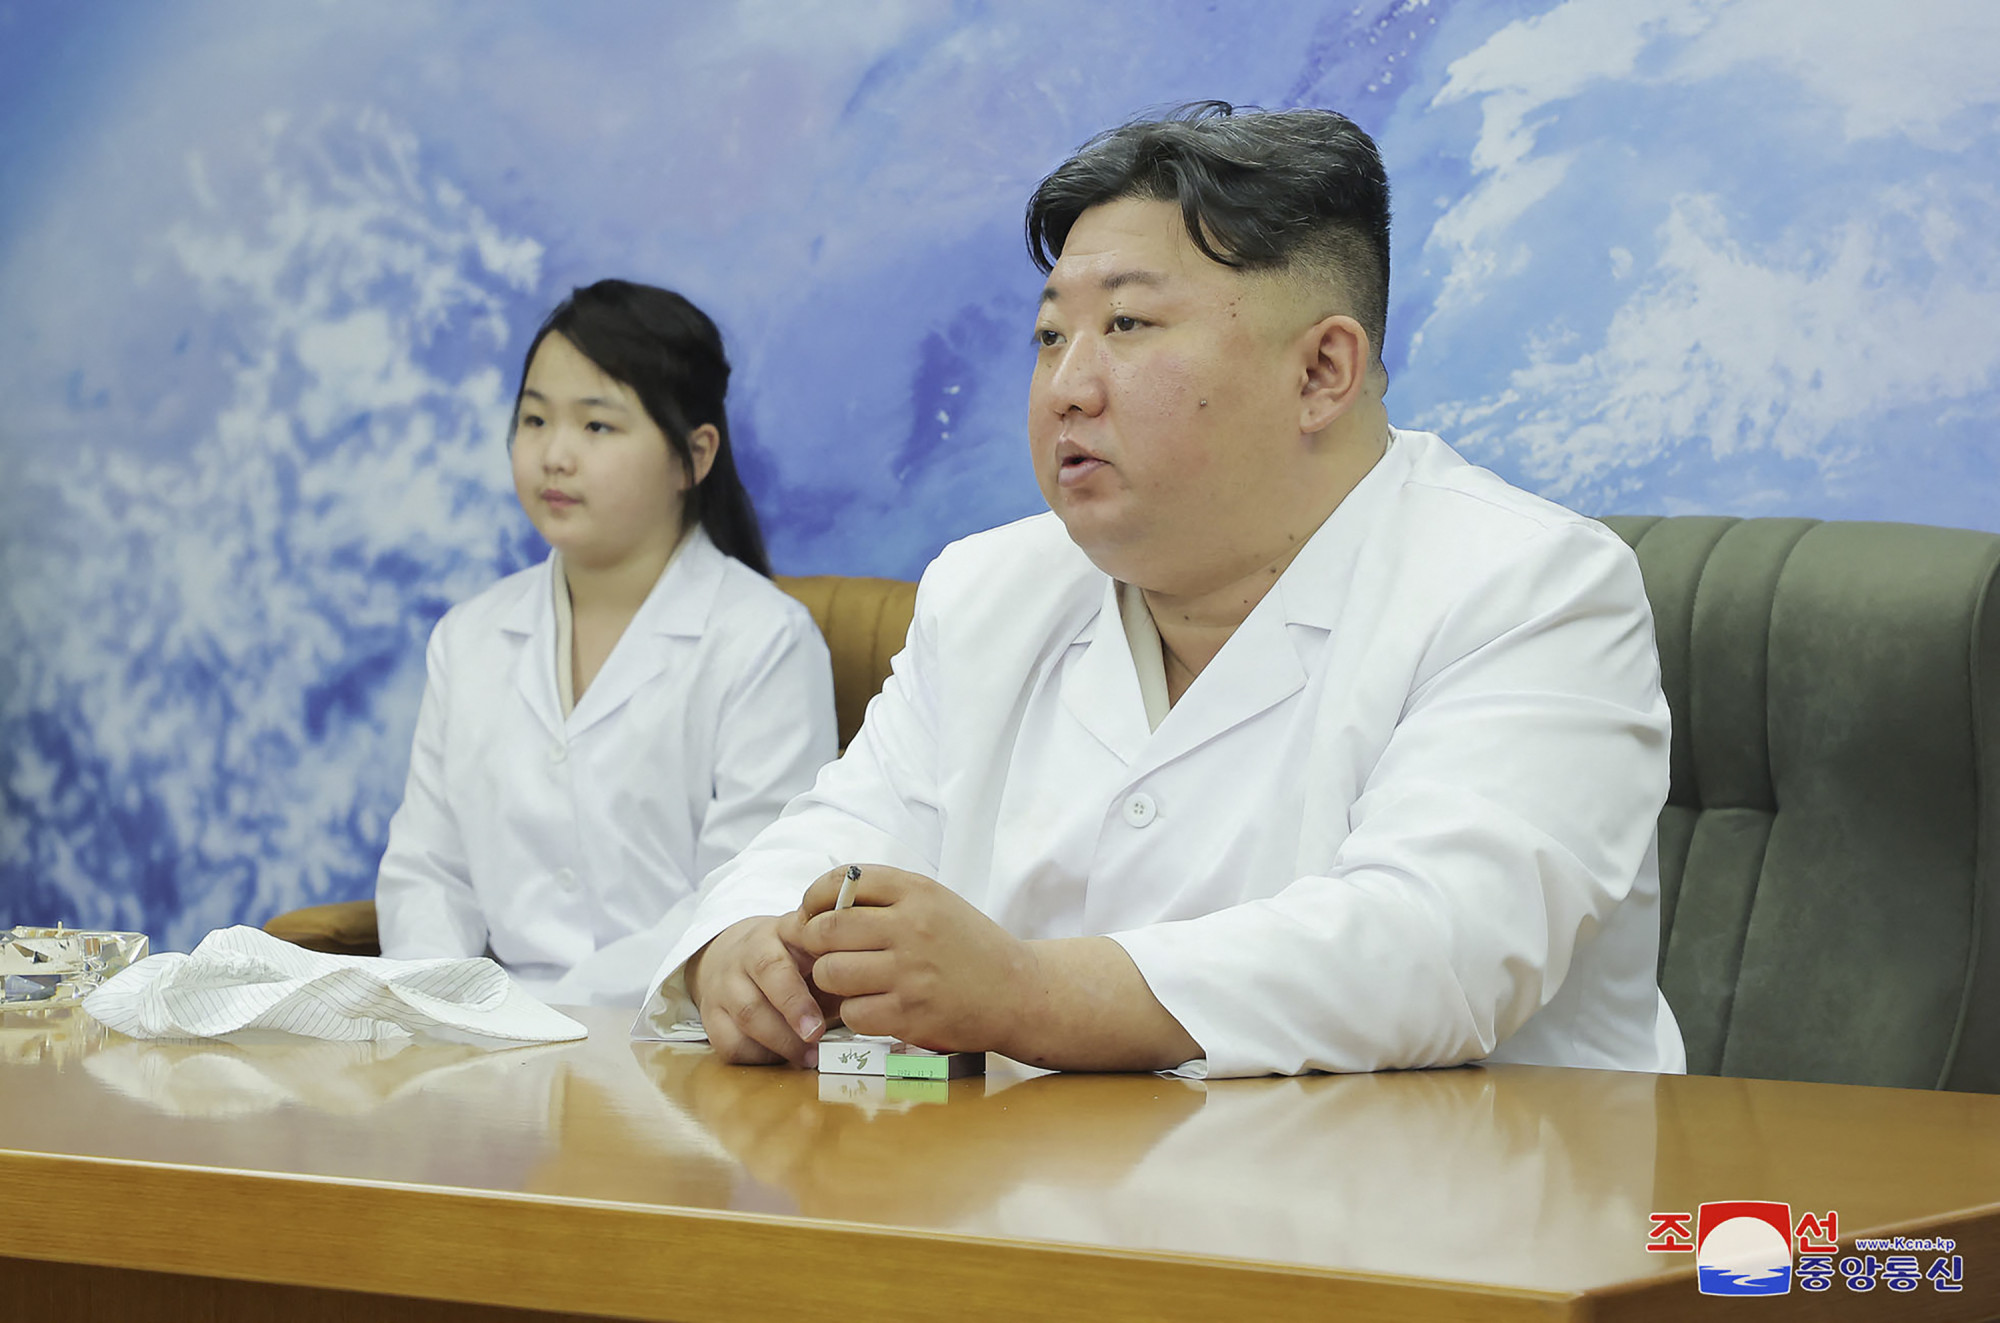 Észak-Korea megerősítette, hogy júniusban kilőnek egy katonai felderítő műholdat